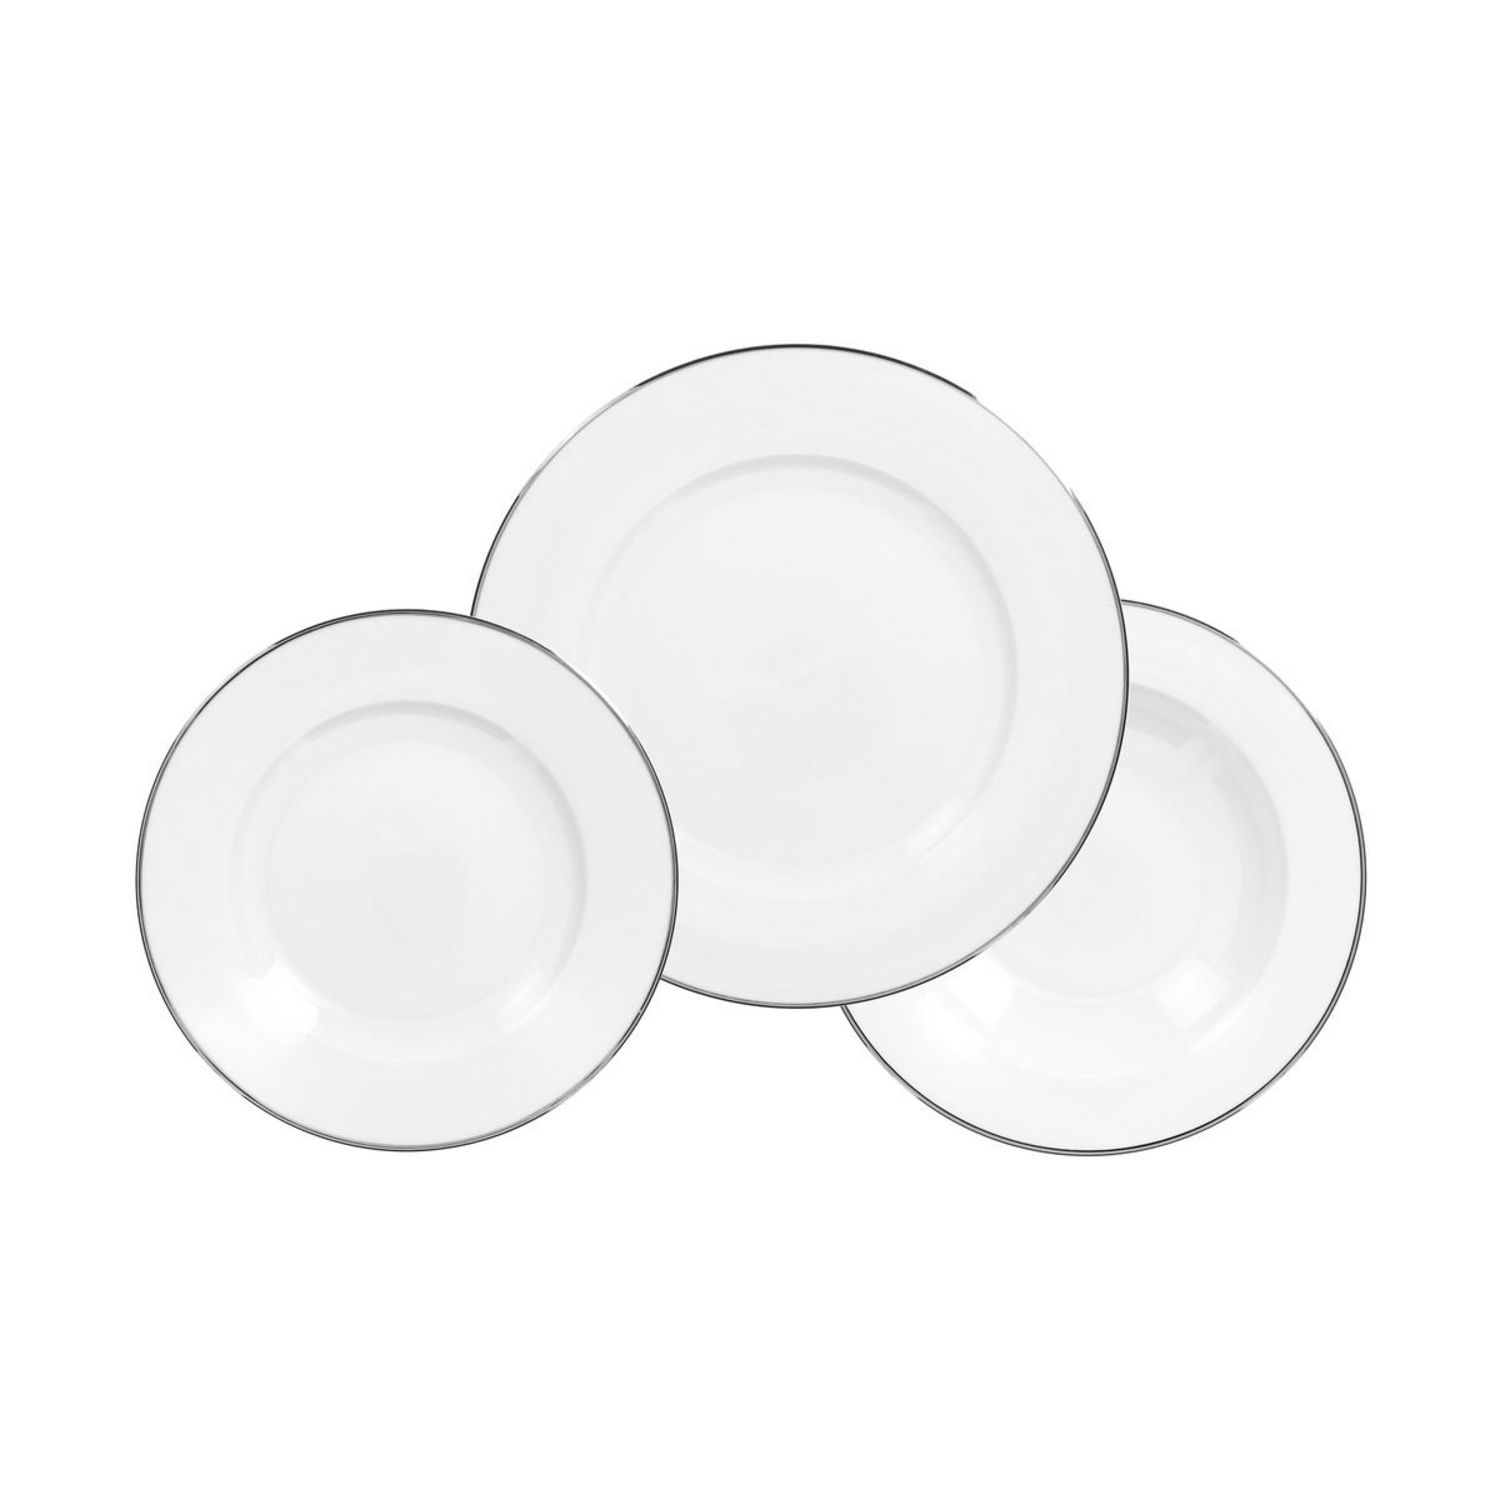 Service vaisselle 18 pièces en porcelaine - Blanc et argenté - DYNAO